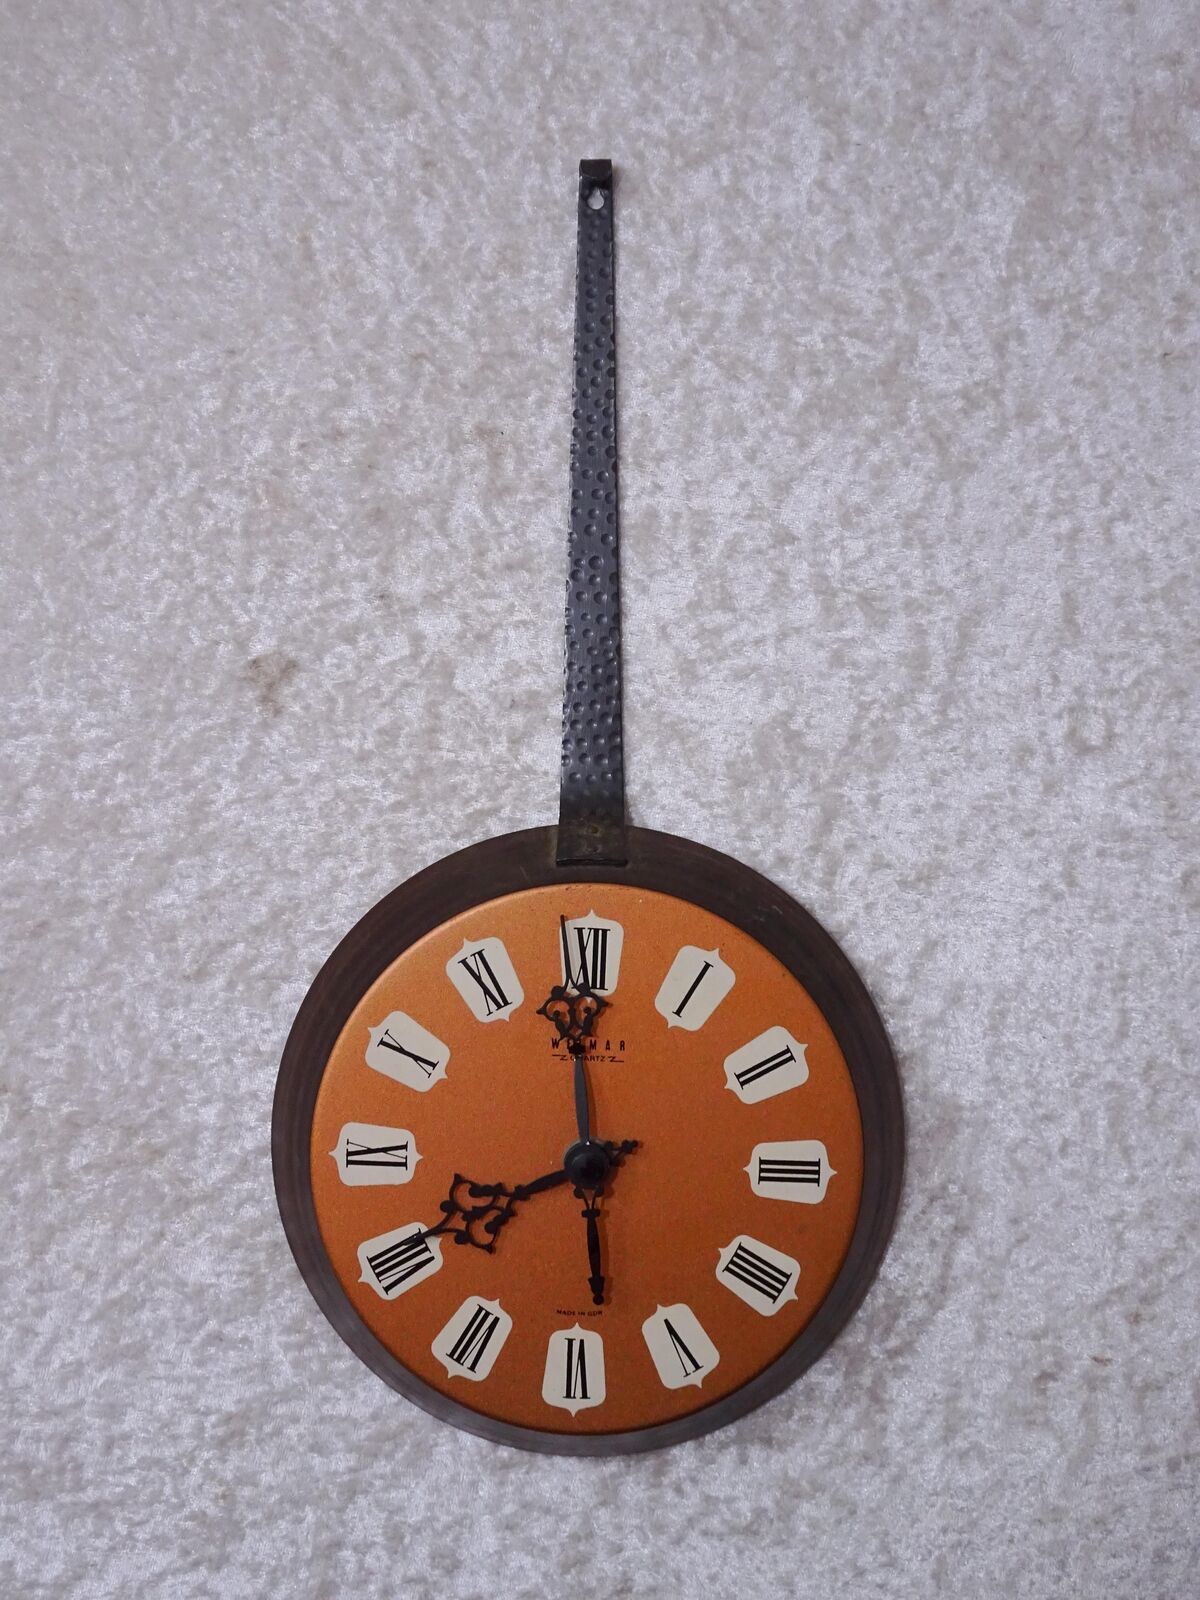 Q3X9bA - Weimar Electric Pfannenform GDR Design Wall Clock - Vintage around